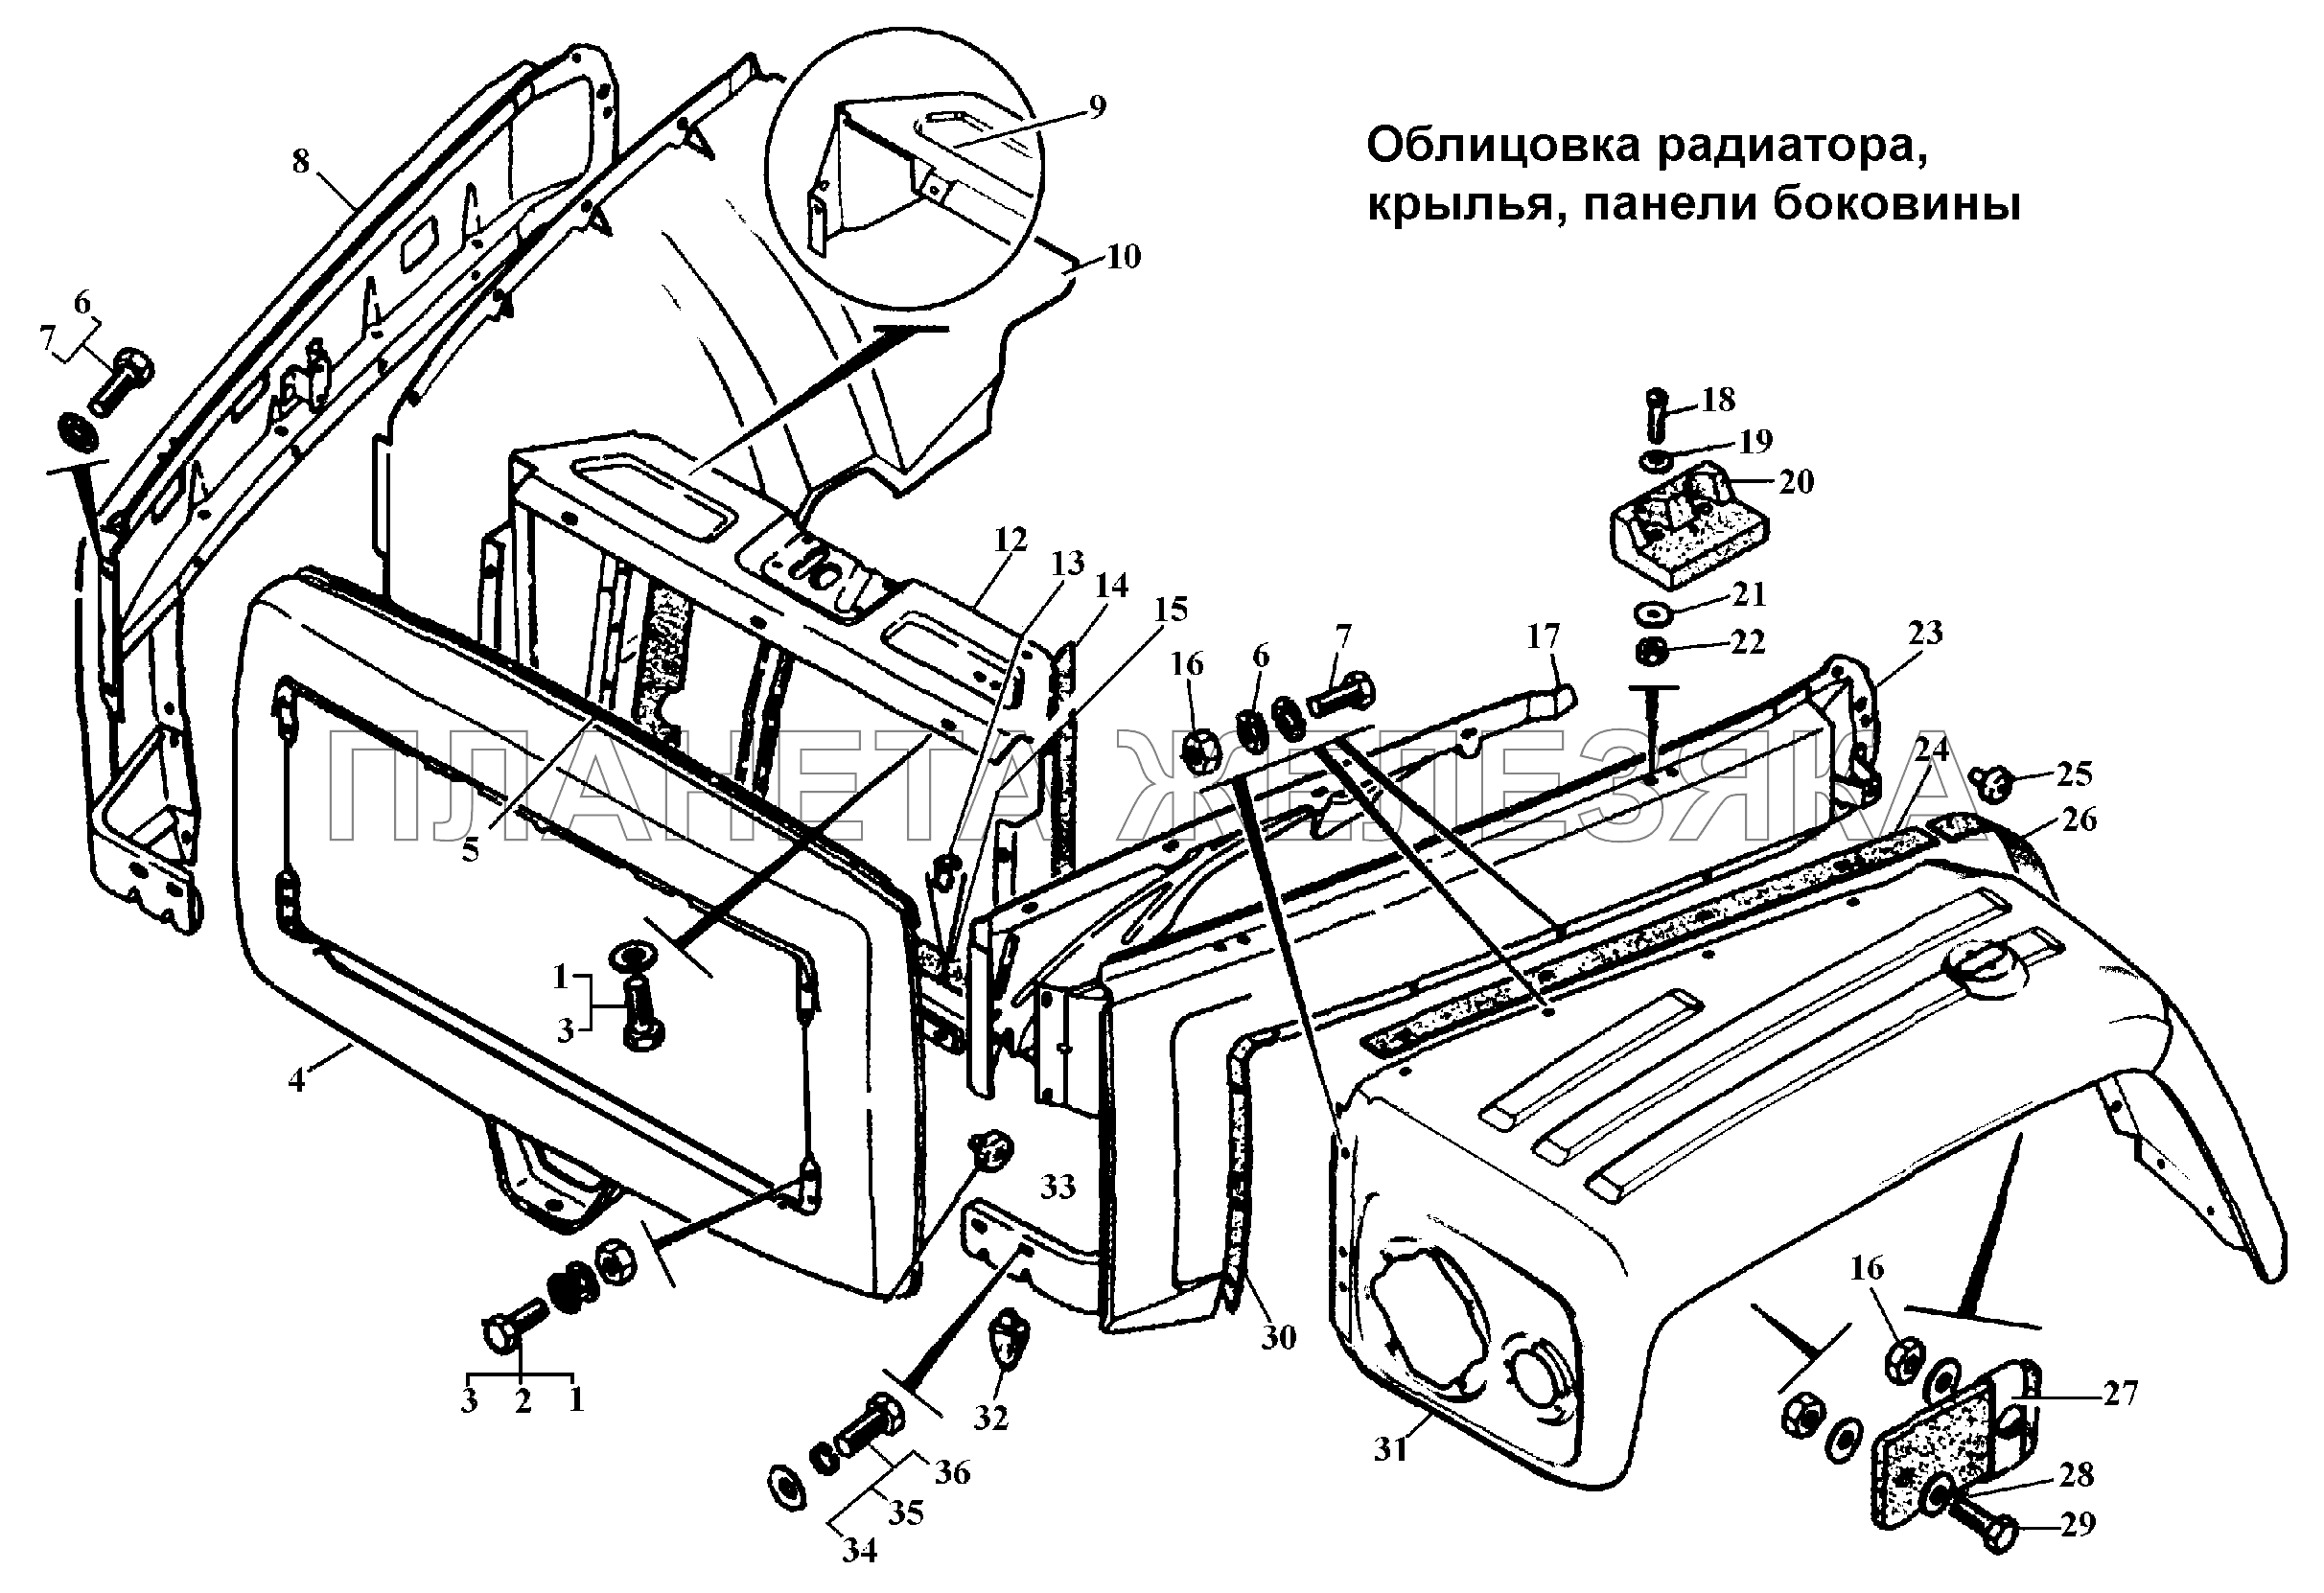 Облицовка радиатора, крылья, панели боковины ГАЗ-3308